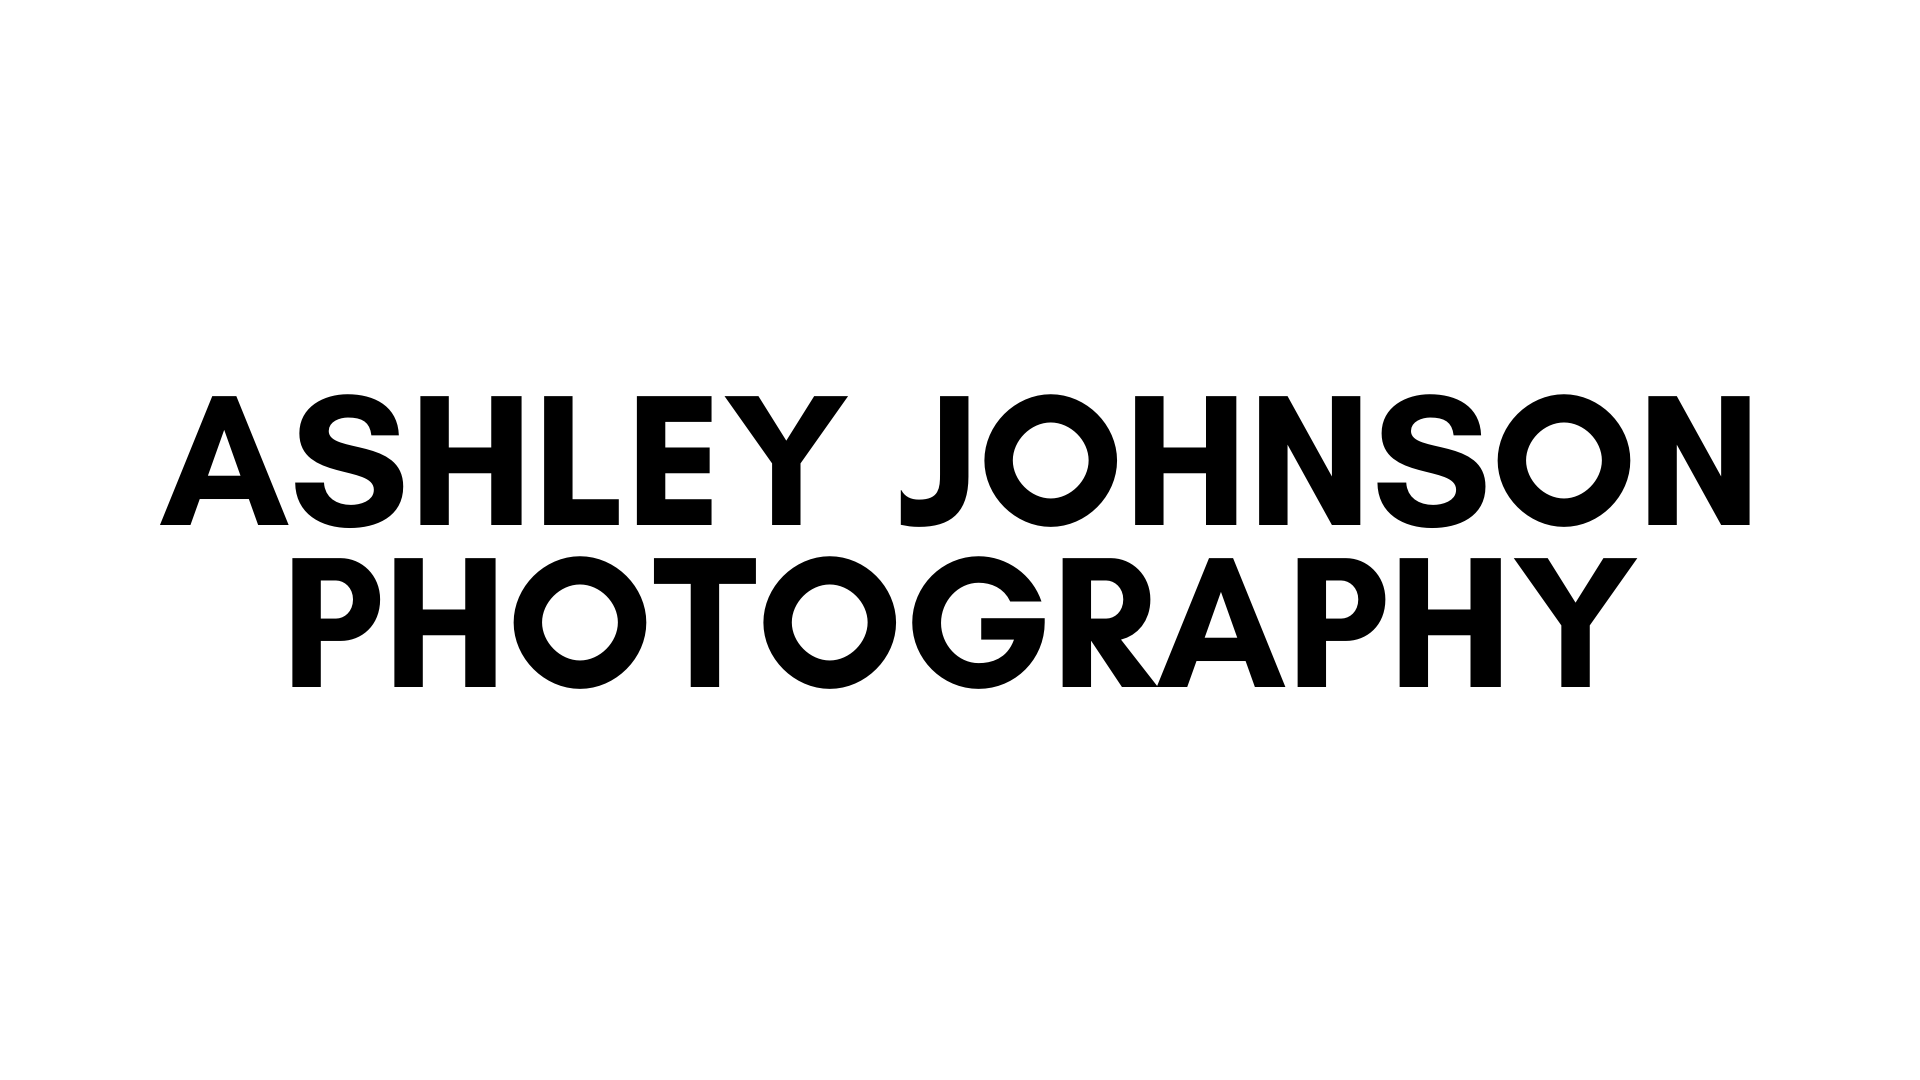 ASHLEY JOHNSON PHOTOGRAPHY